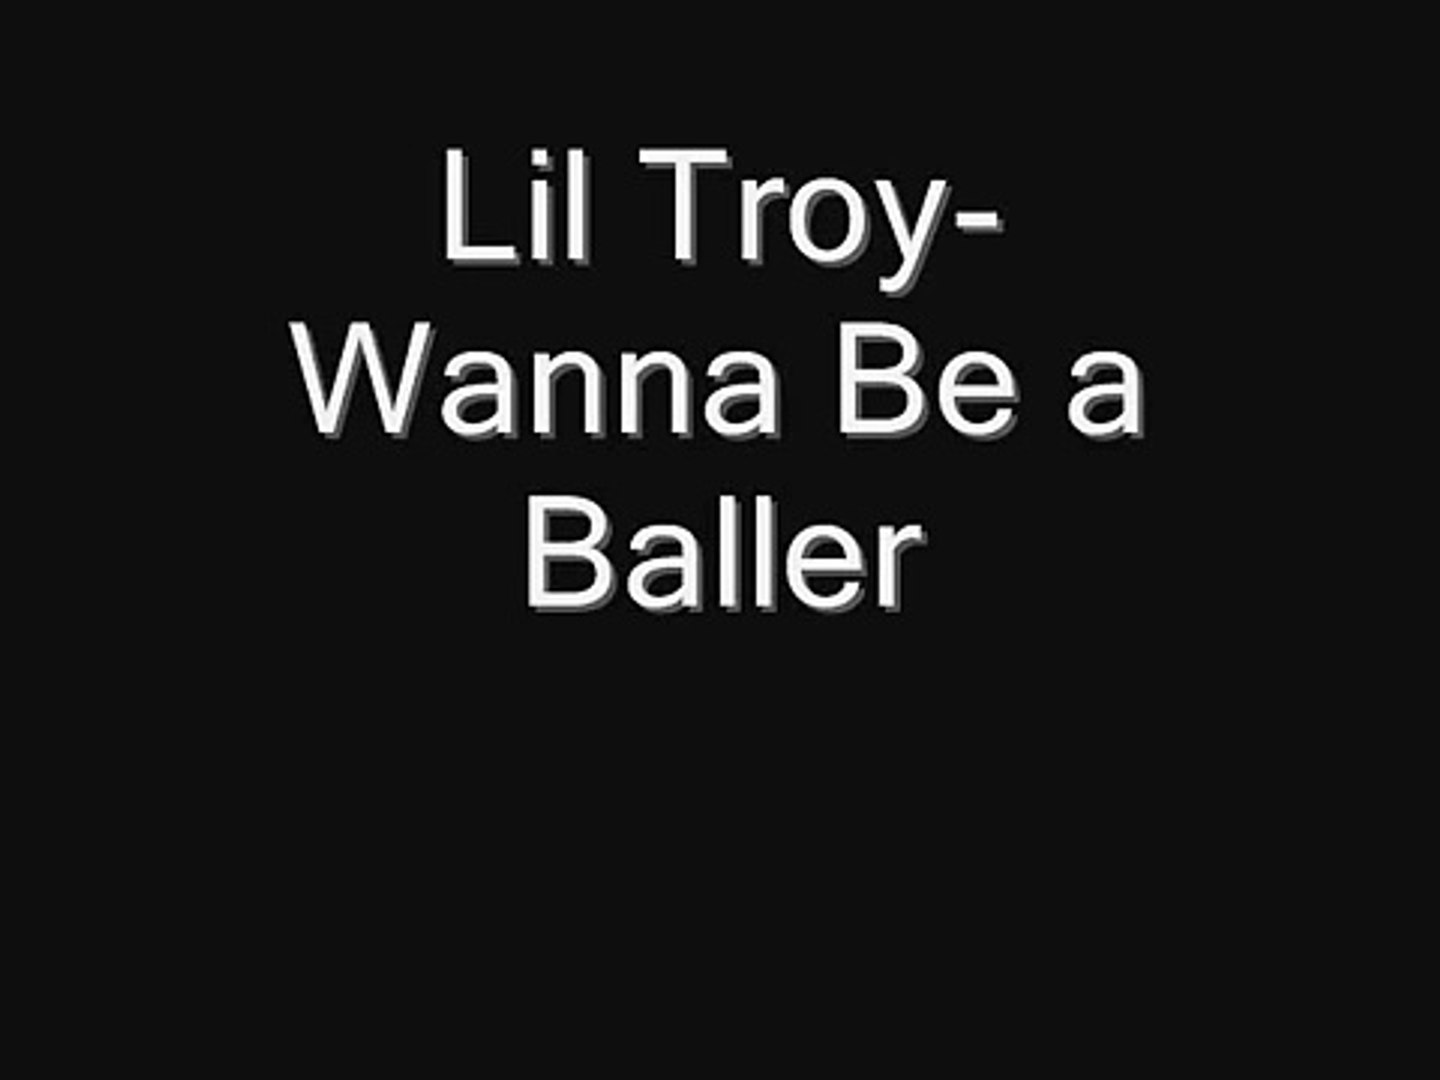 Lil troy wanna be a baller remix